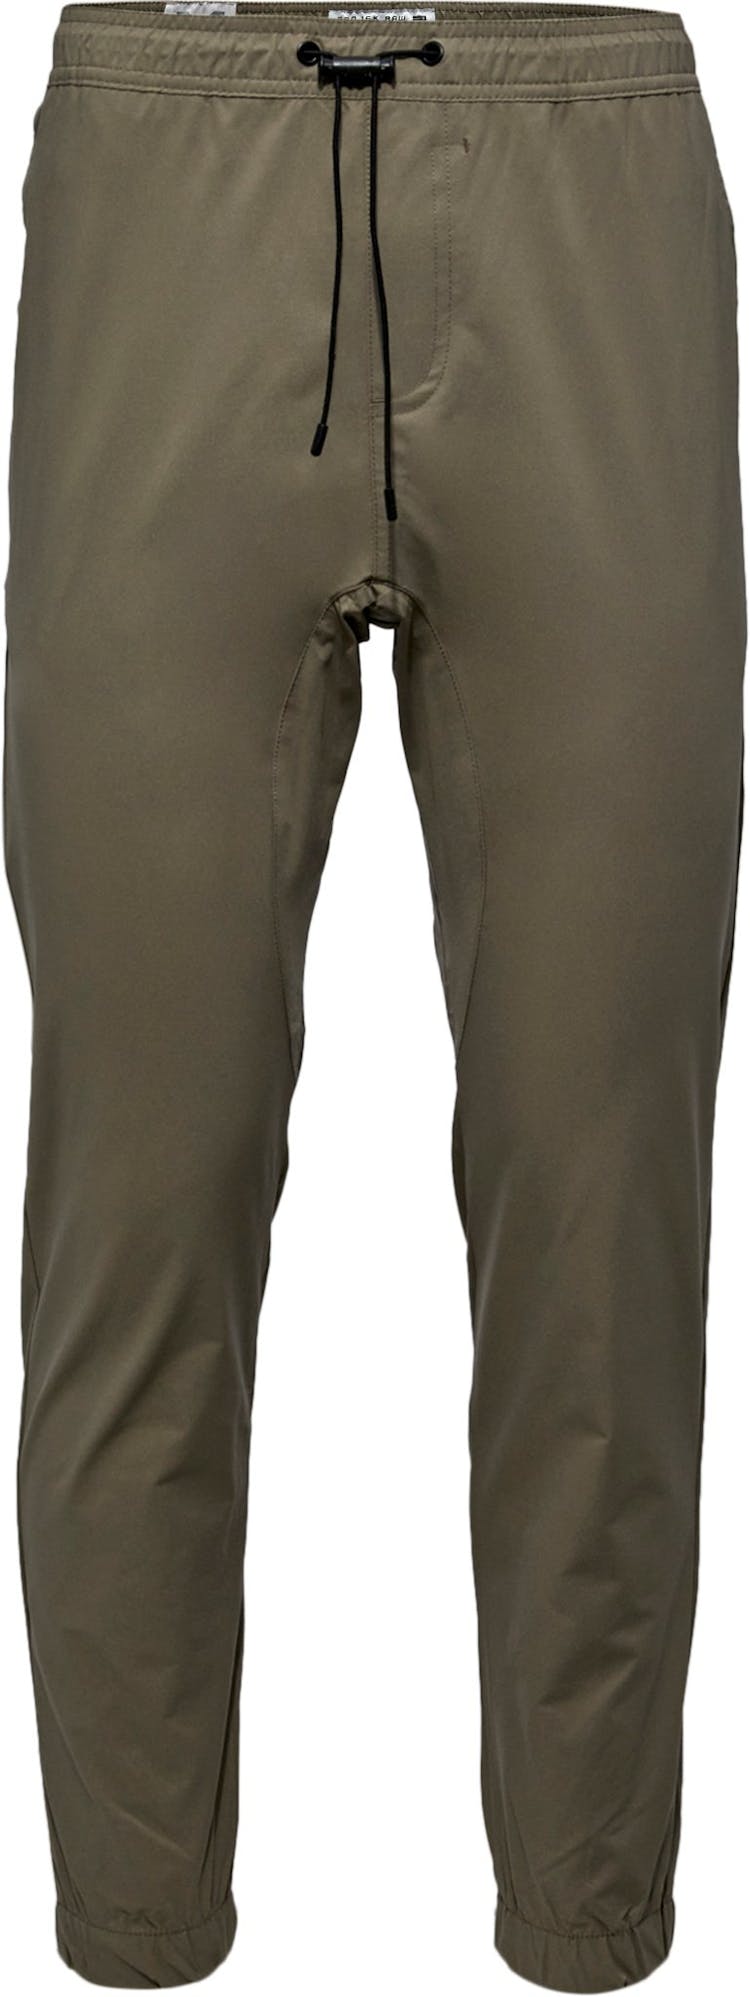 Numéro de l'image de la galerie de produits 1 pour le produit Pantalon de jogging technique léger - Homme